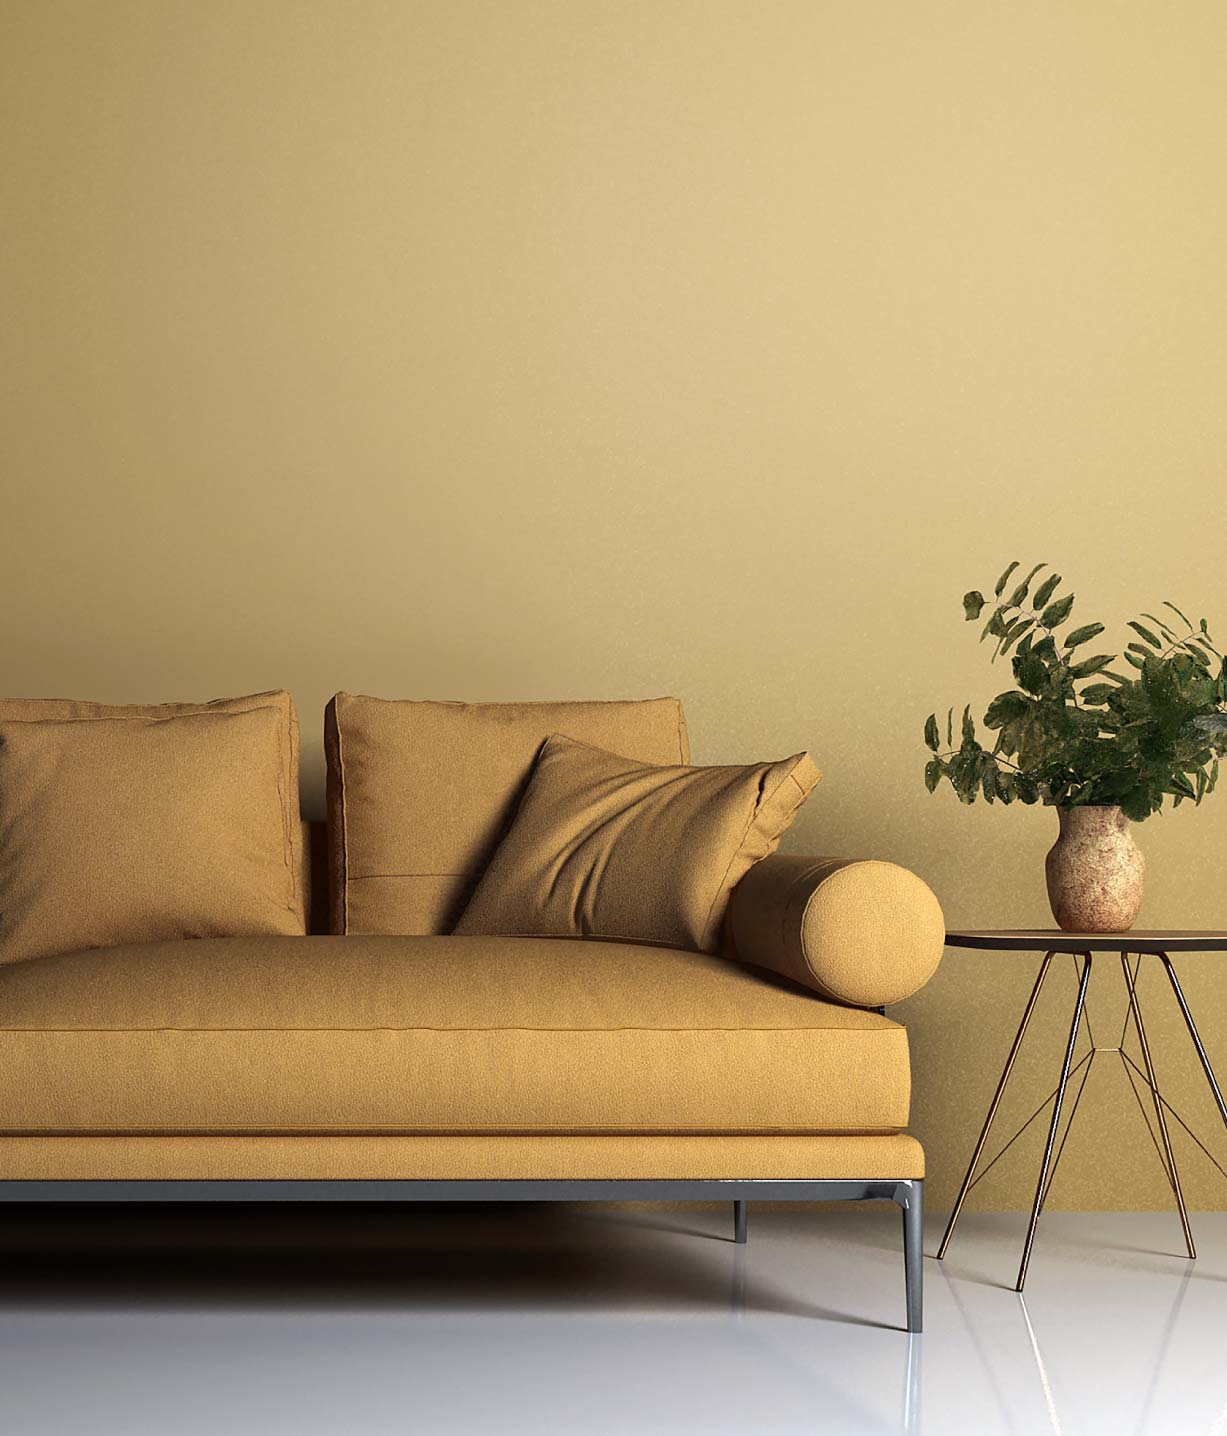 Sofa mit Kissen, Beistelltisch und Vase mit Pflanzen für Smartphone